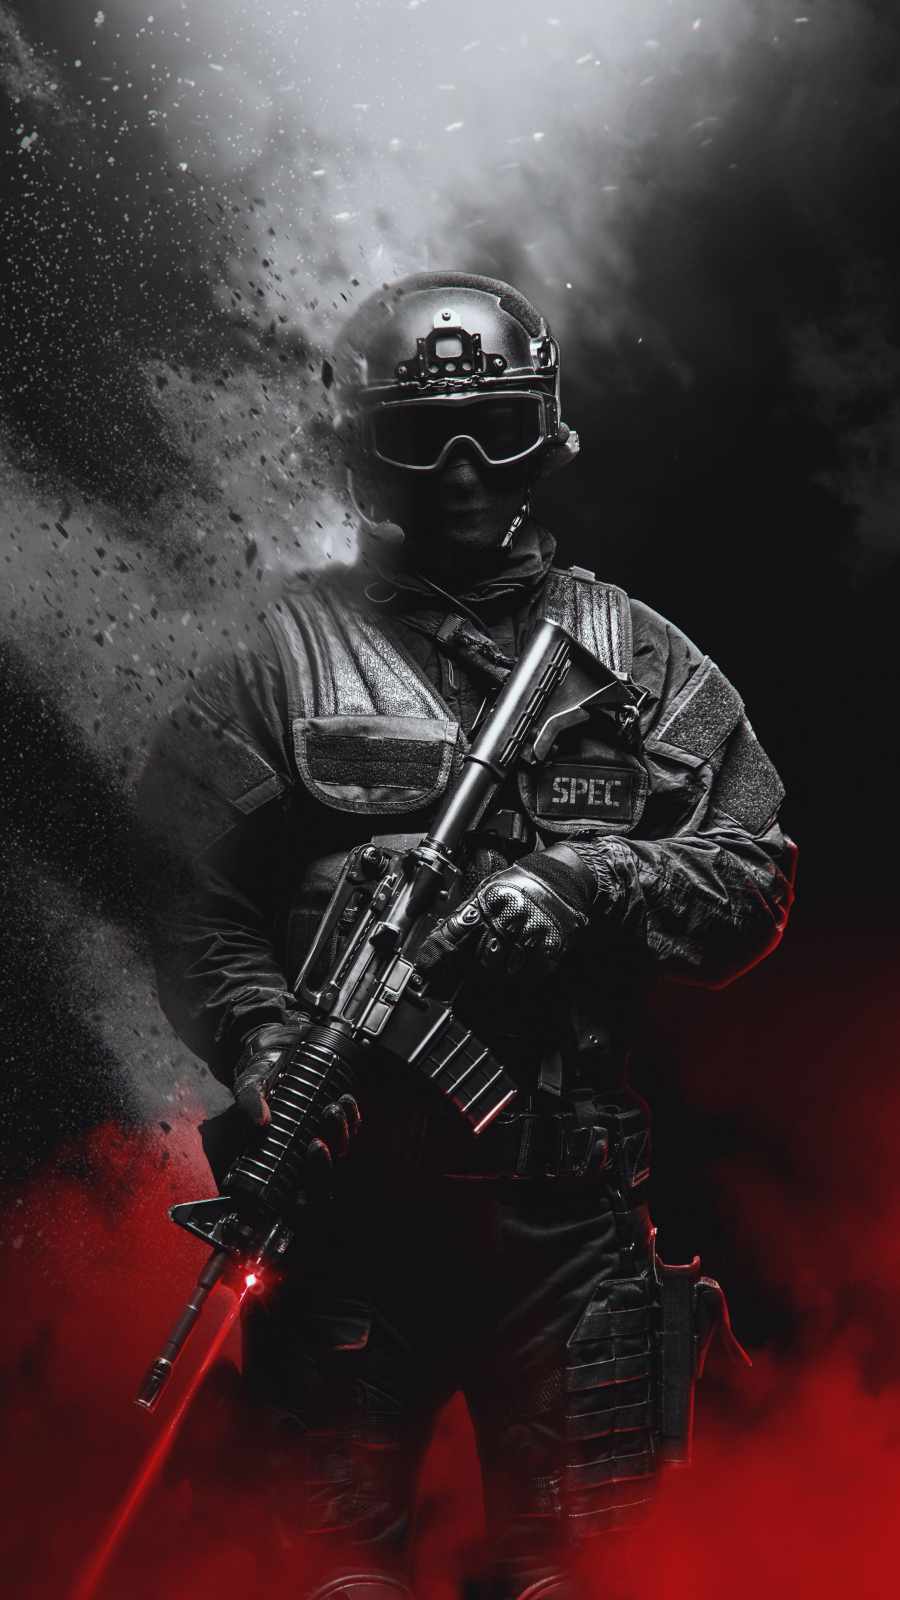 Spec Ops Soldier iPhone Wallpaper